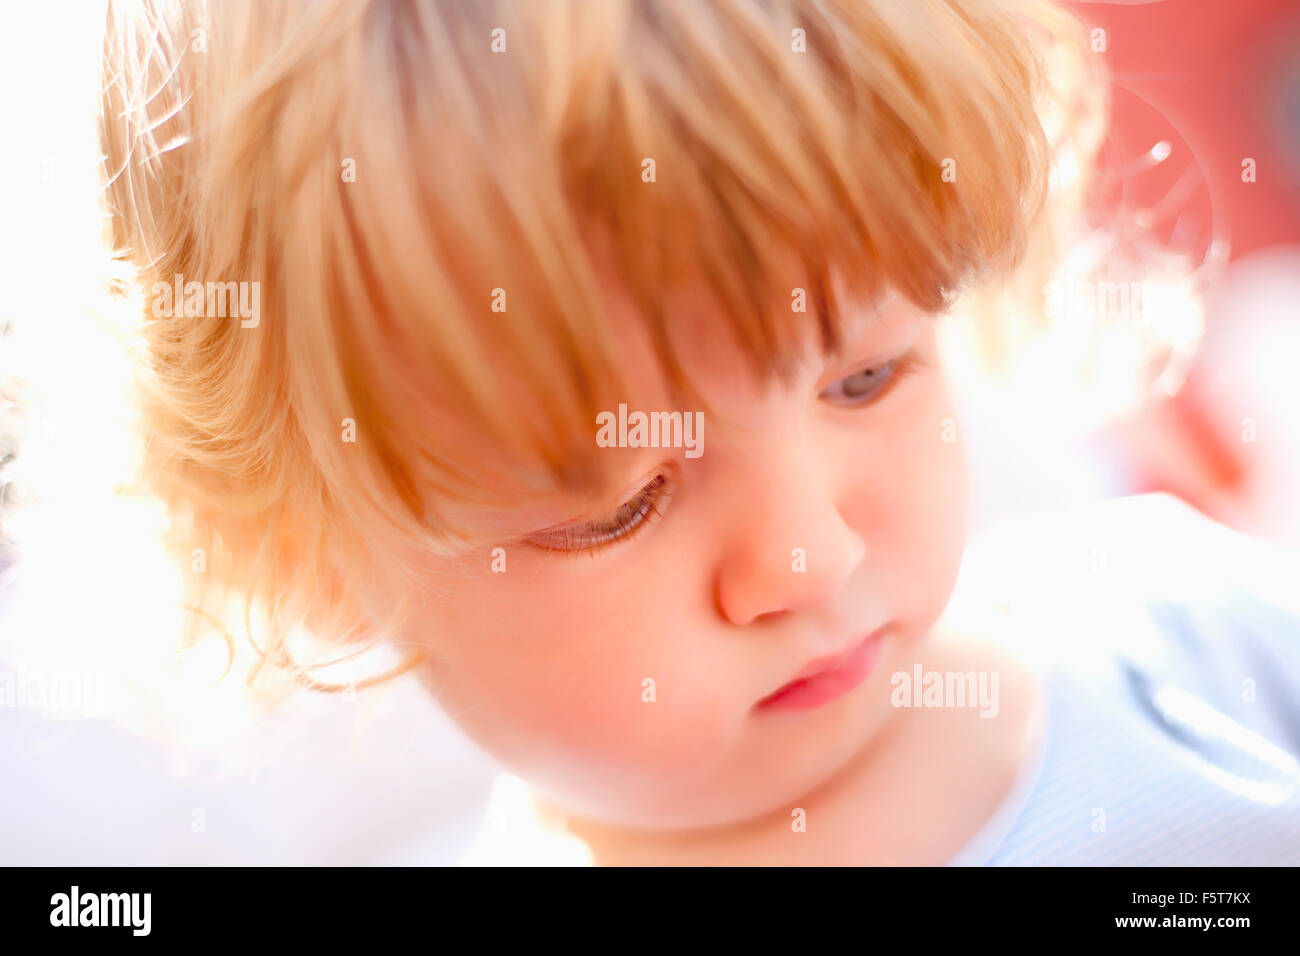 Porträt eines kleinen Jungen mit blonden Haaren auf der Suche Stockfoto